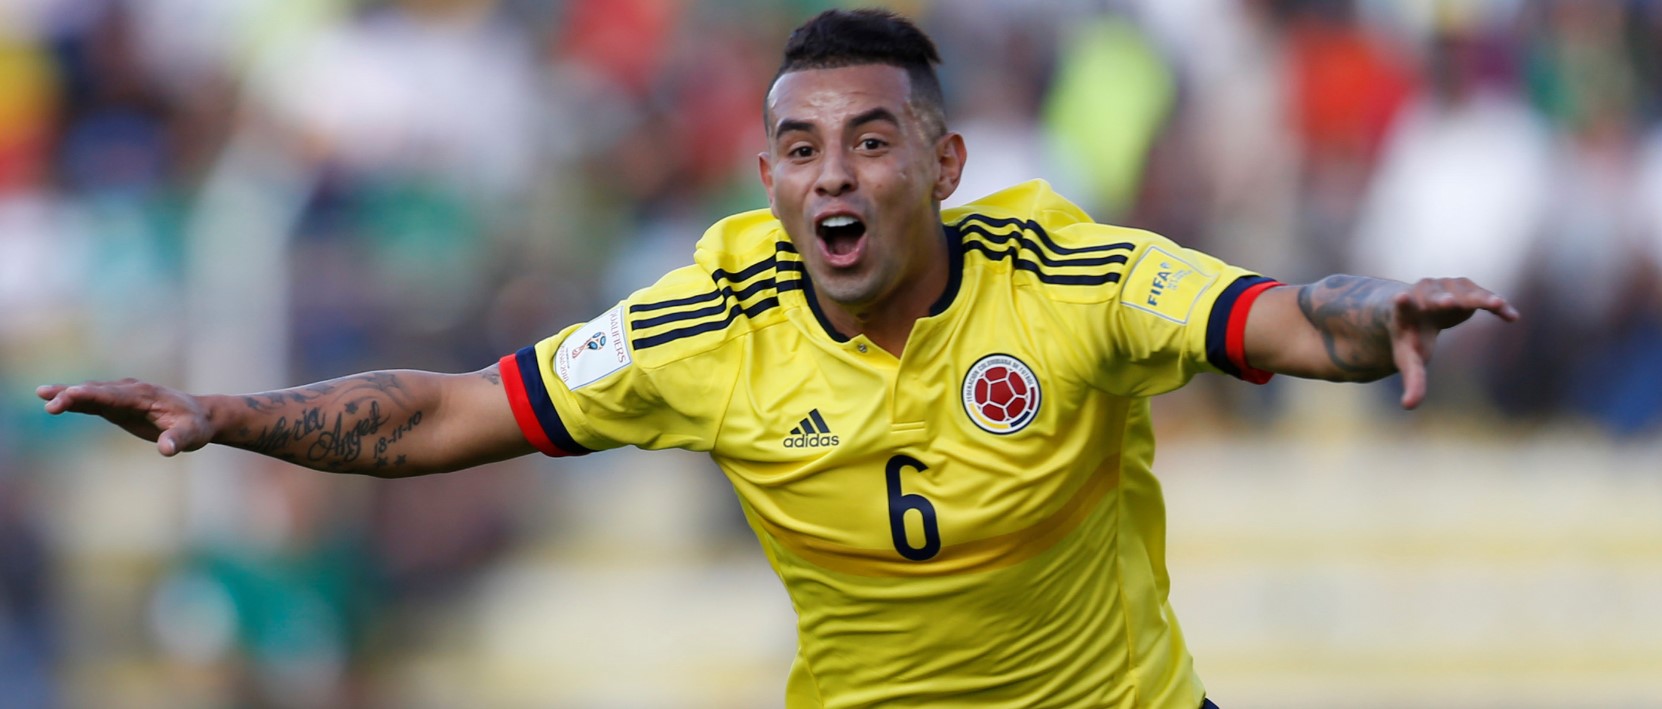 Un jugador de Boca se puede quedar sin Mundial - Mendoza Post